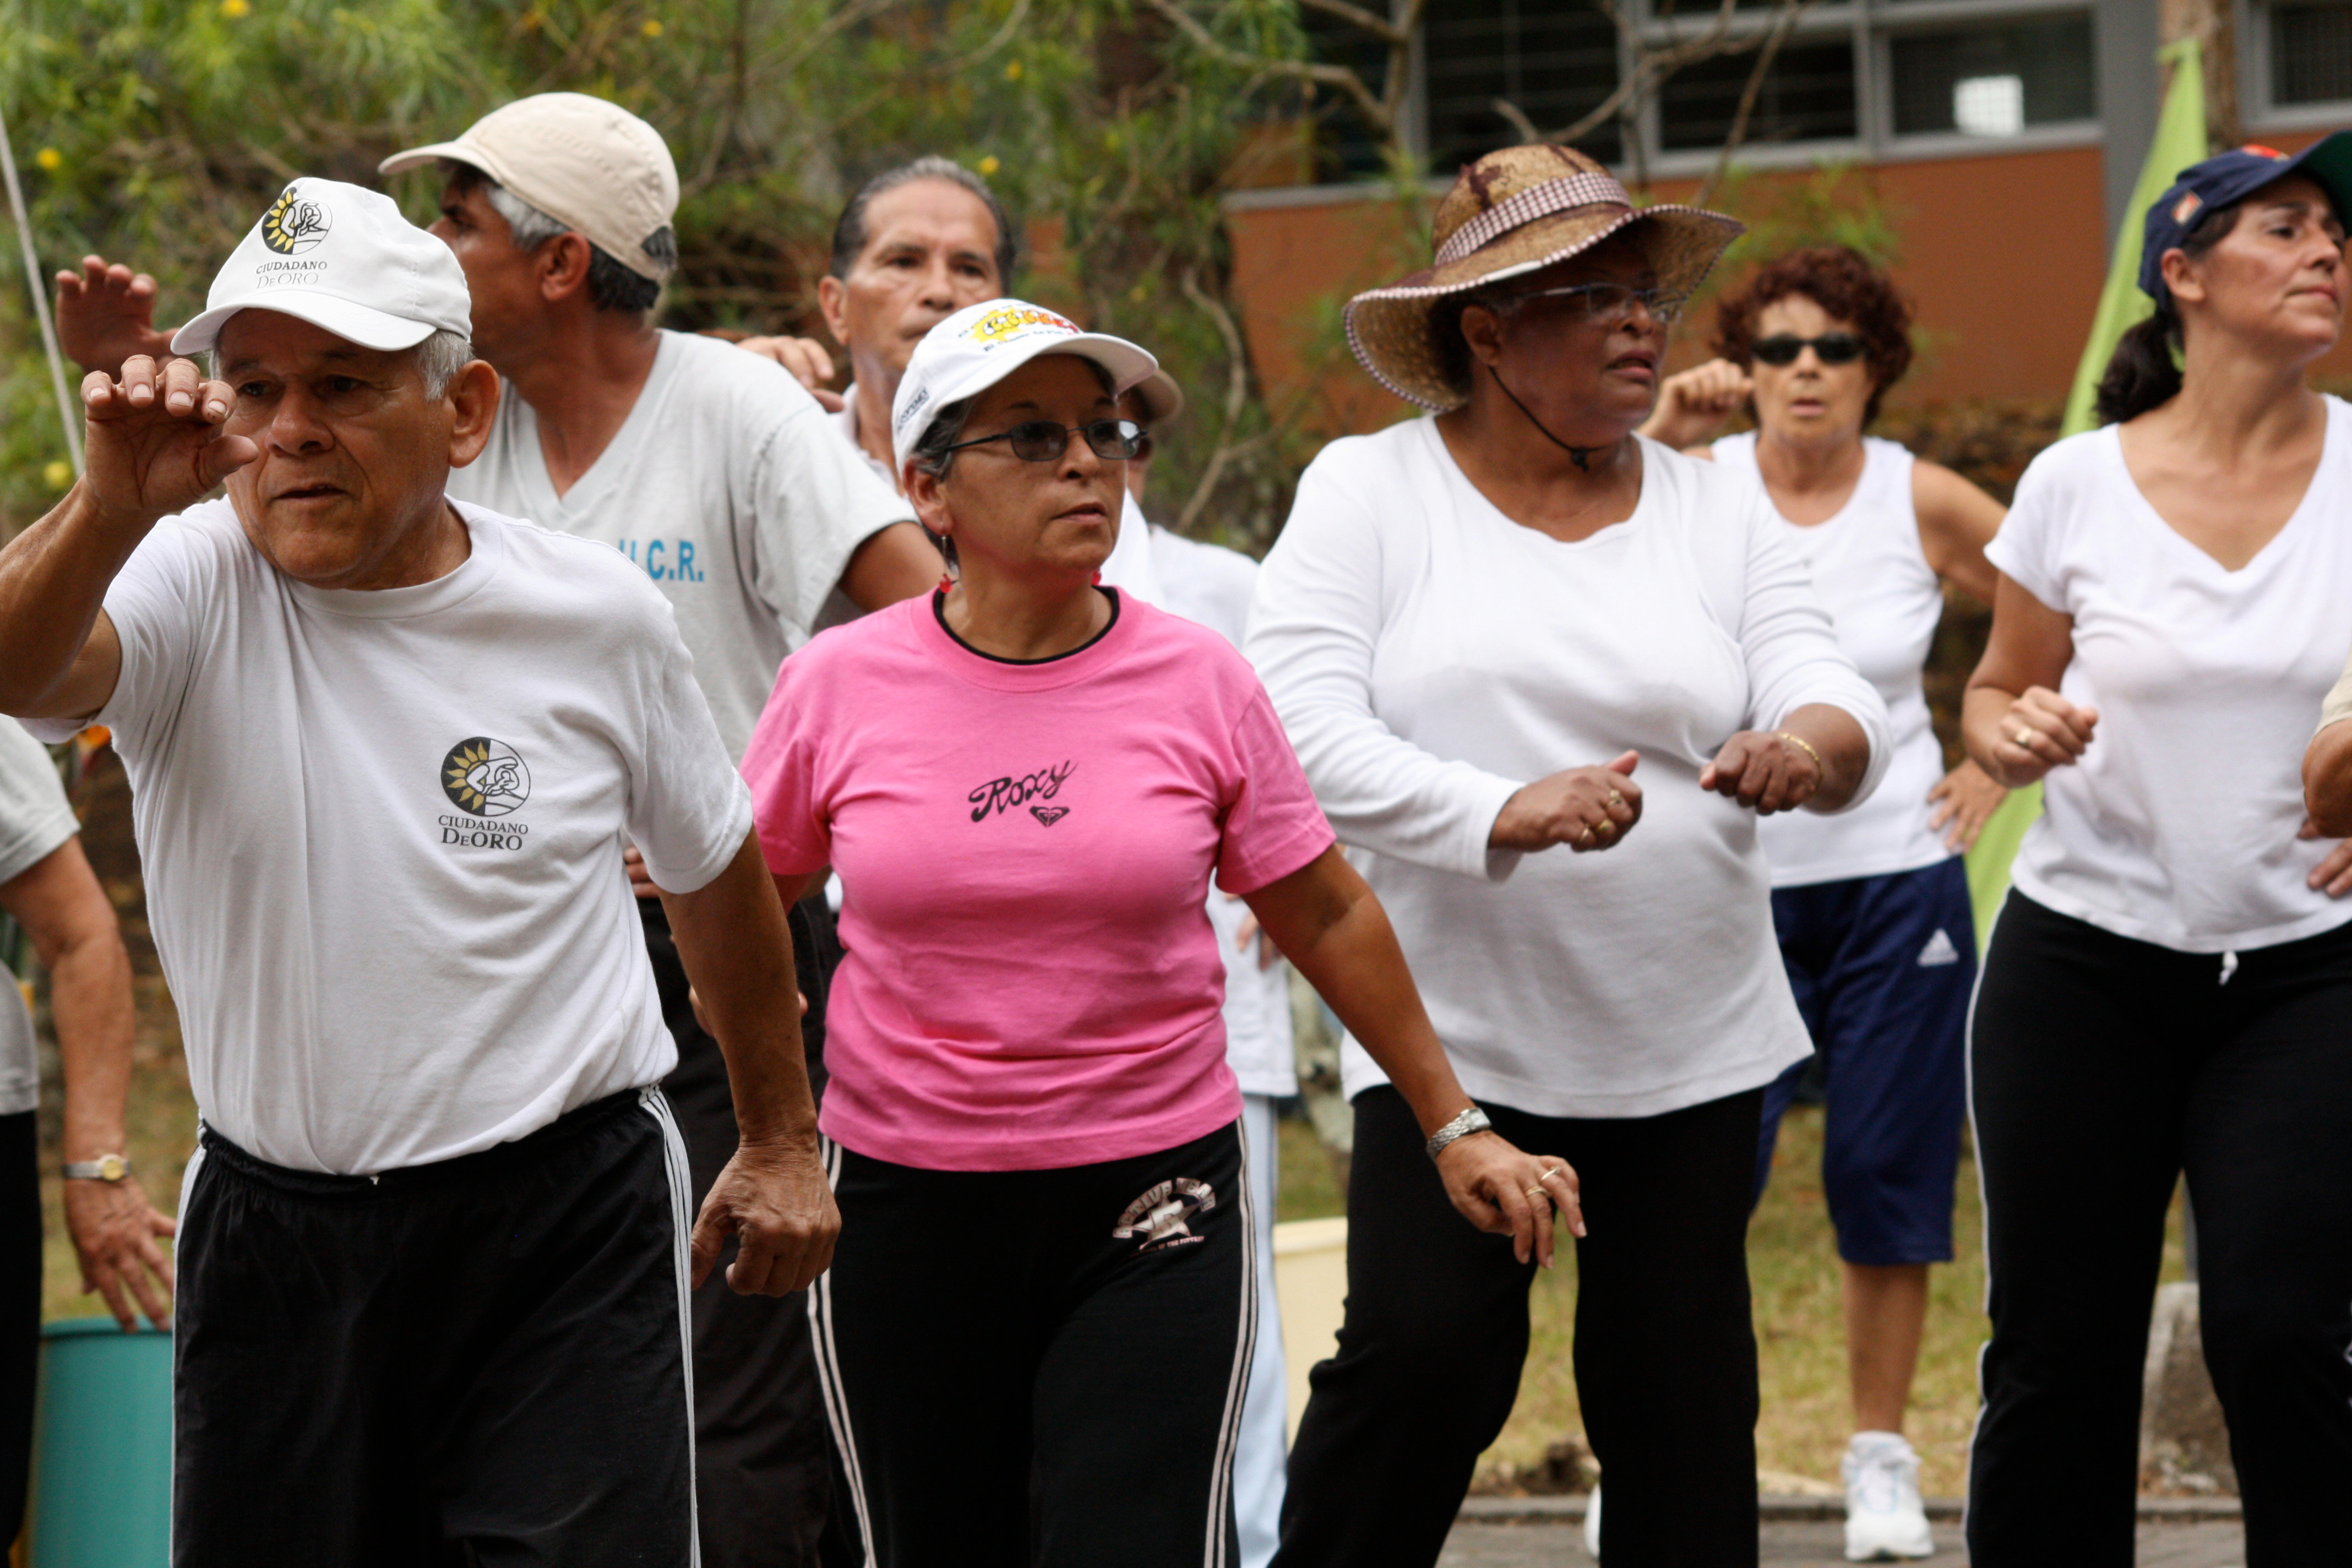 img-noticia-La realización de ejercicio físico de manera regular y controlada es importante en la persona adulta mayor. Fotografìa: ODI.